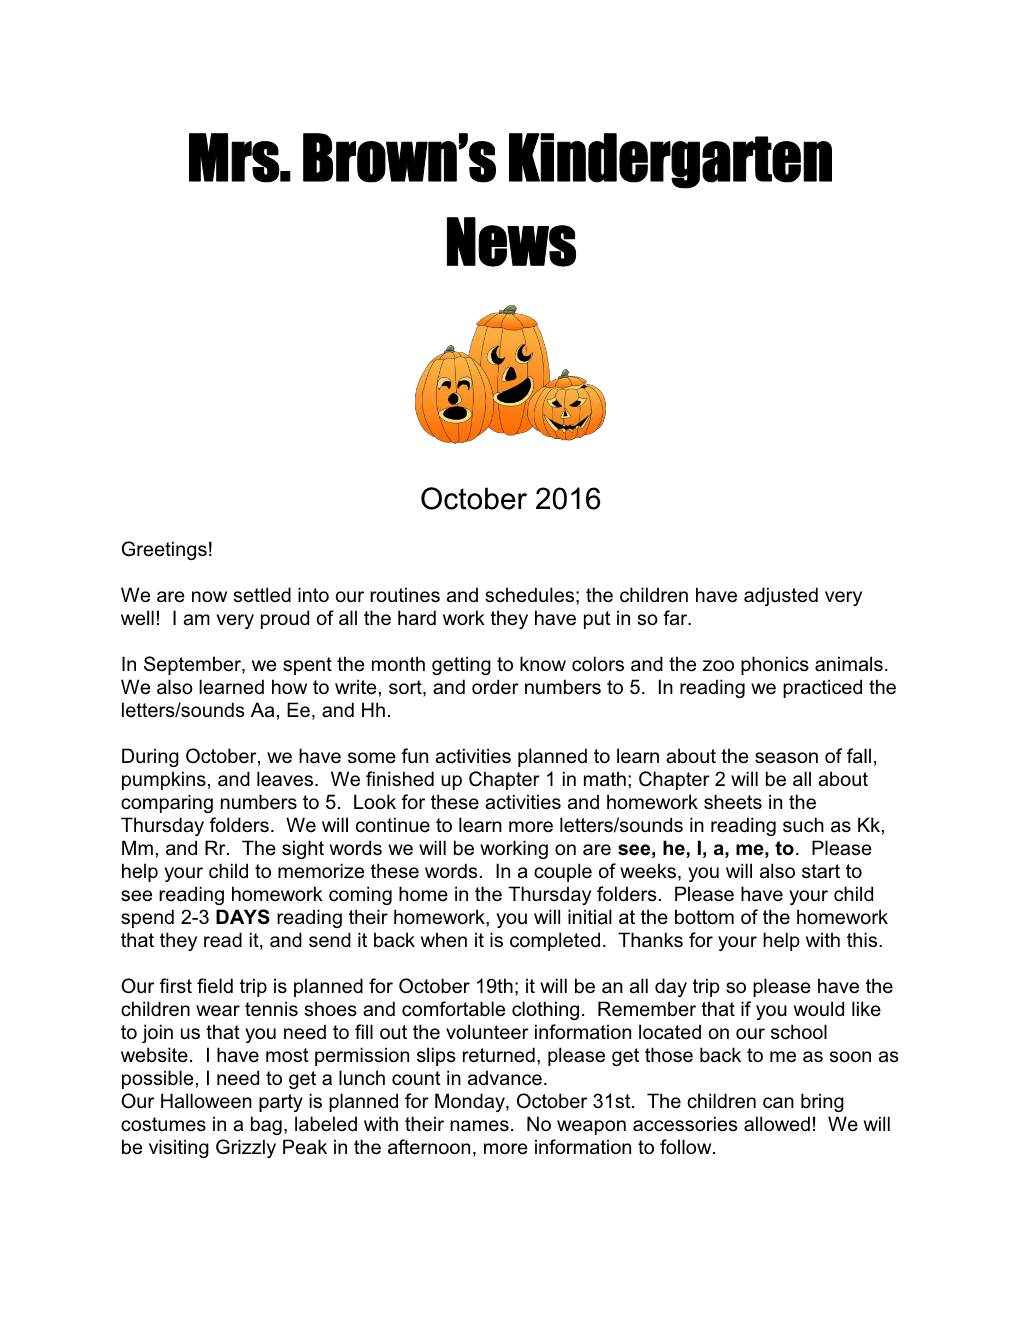 Mrs. Brown S Kindergarten News